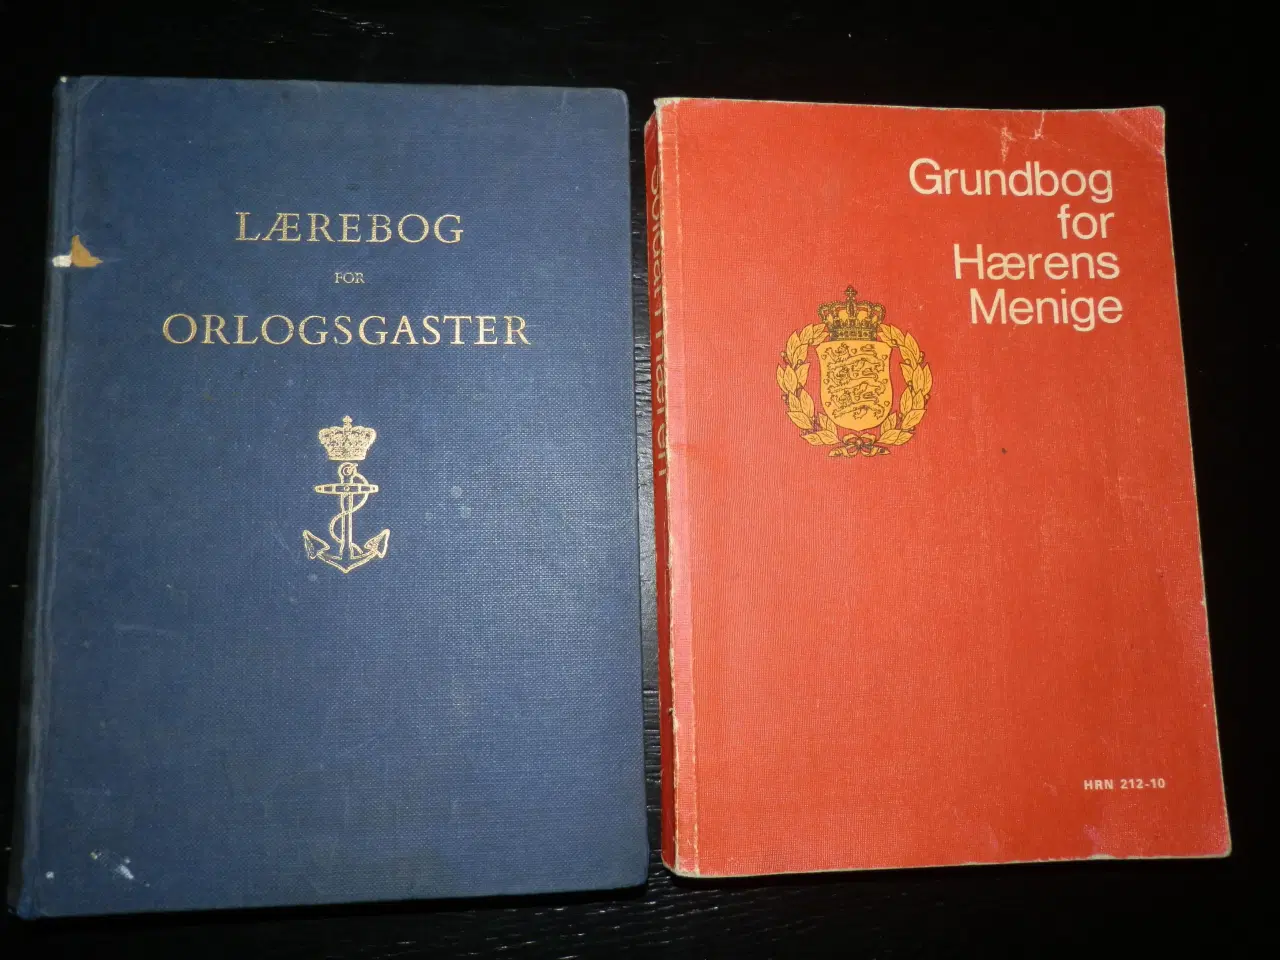 Billede 8 - Lærebøger for Orlogsgaster & Grundbog for Hæren